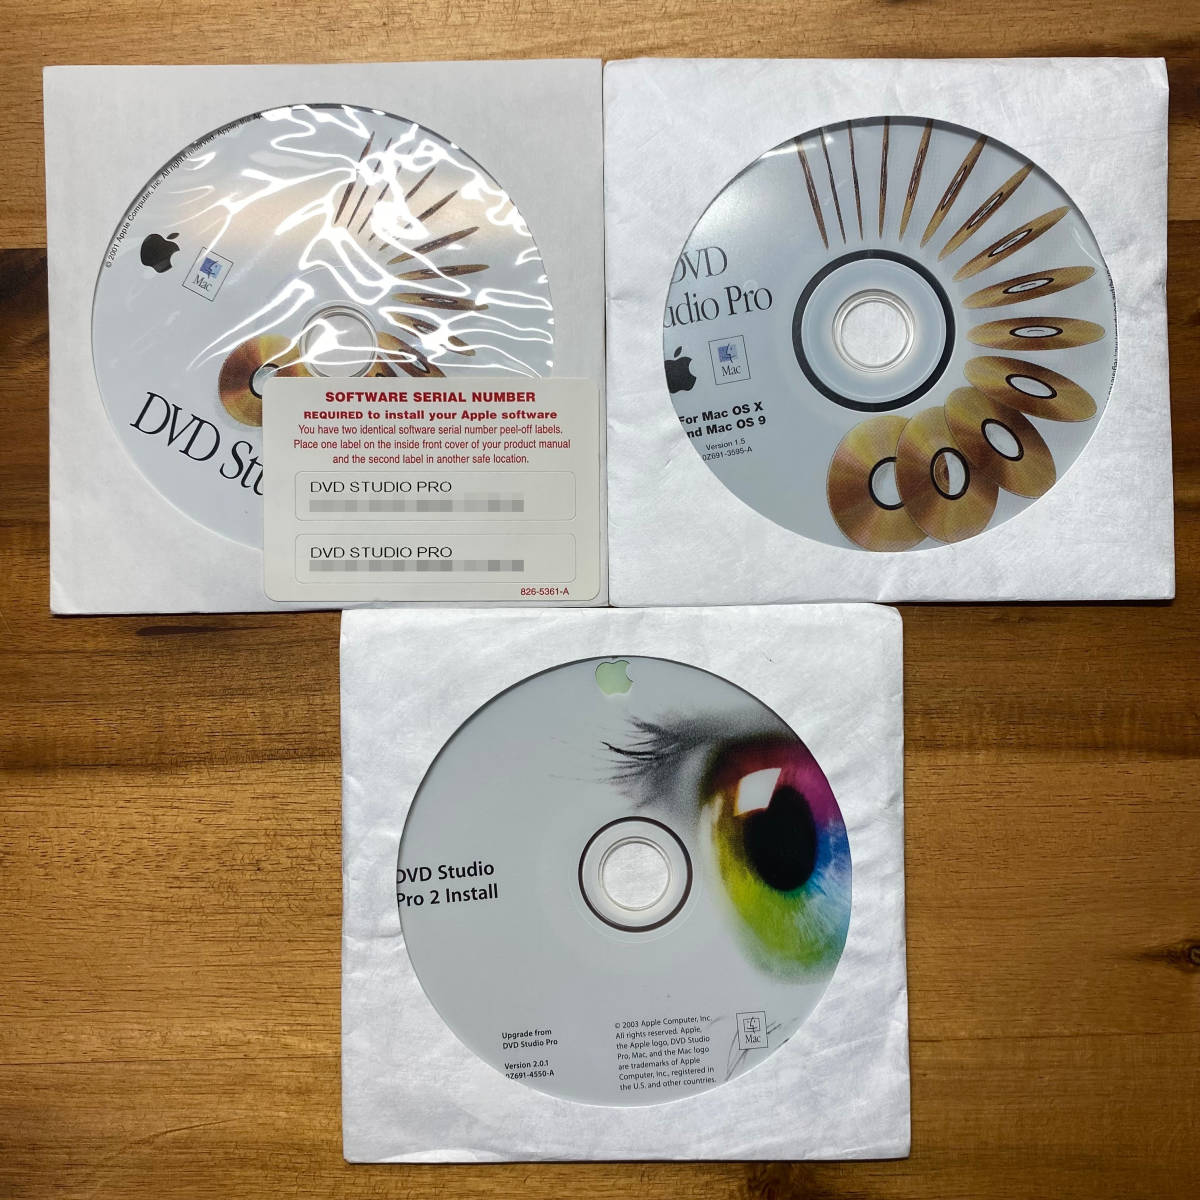 [即決][送料無料][ジャンク扱い] Apple DVD Studio Pro 1.0/1.5/2.0アップグレード版 セット QUICK TIME PRO シリアルあり